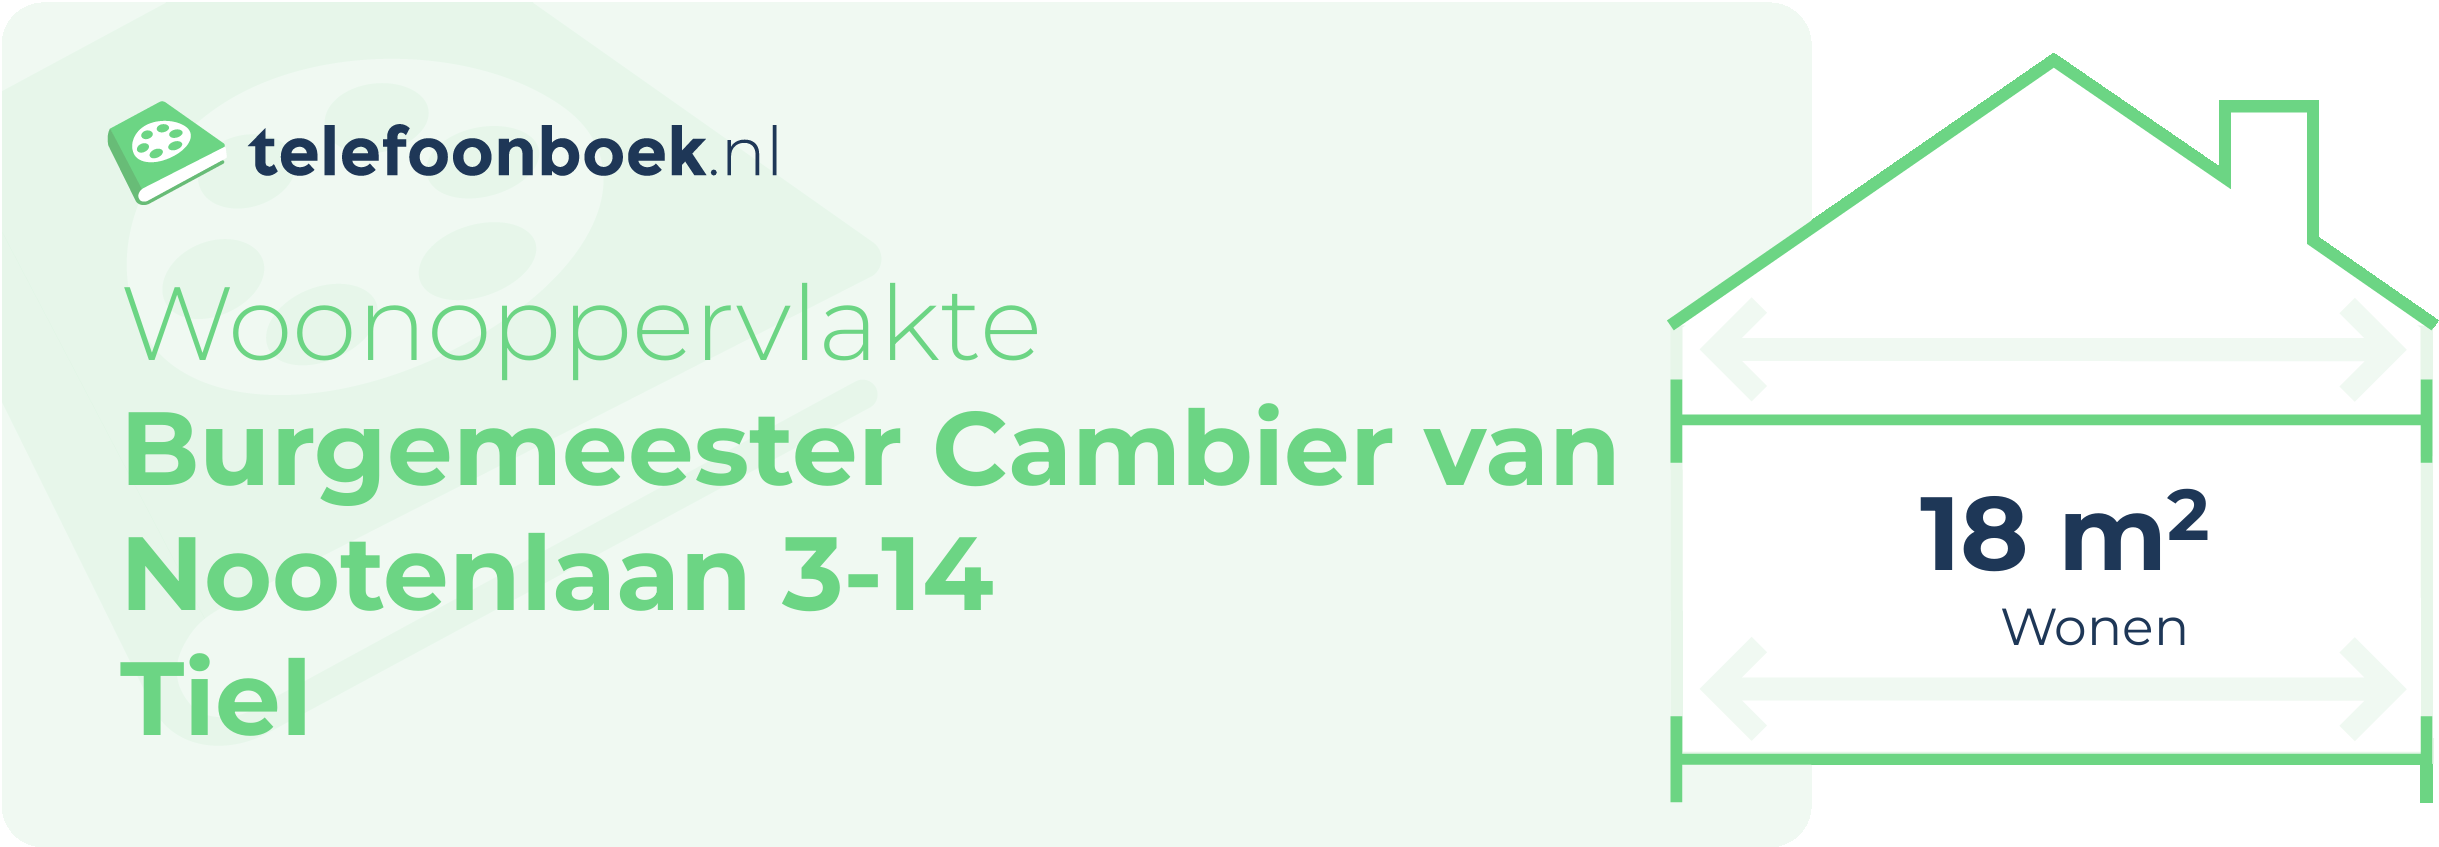 Woonoppervlakte Burgemeester Cambier Van Nootenlaan 3-14 Tiel